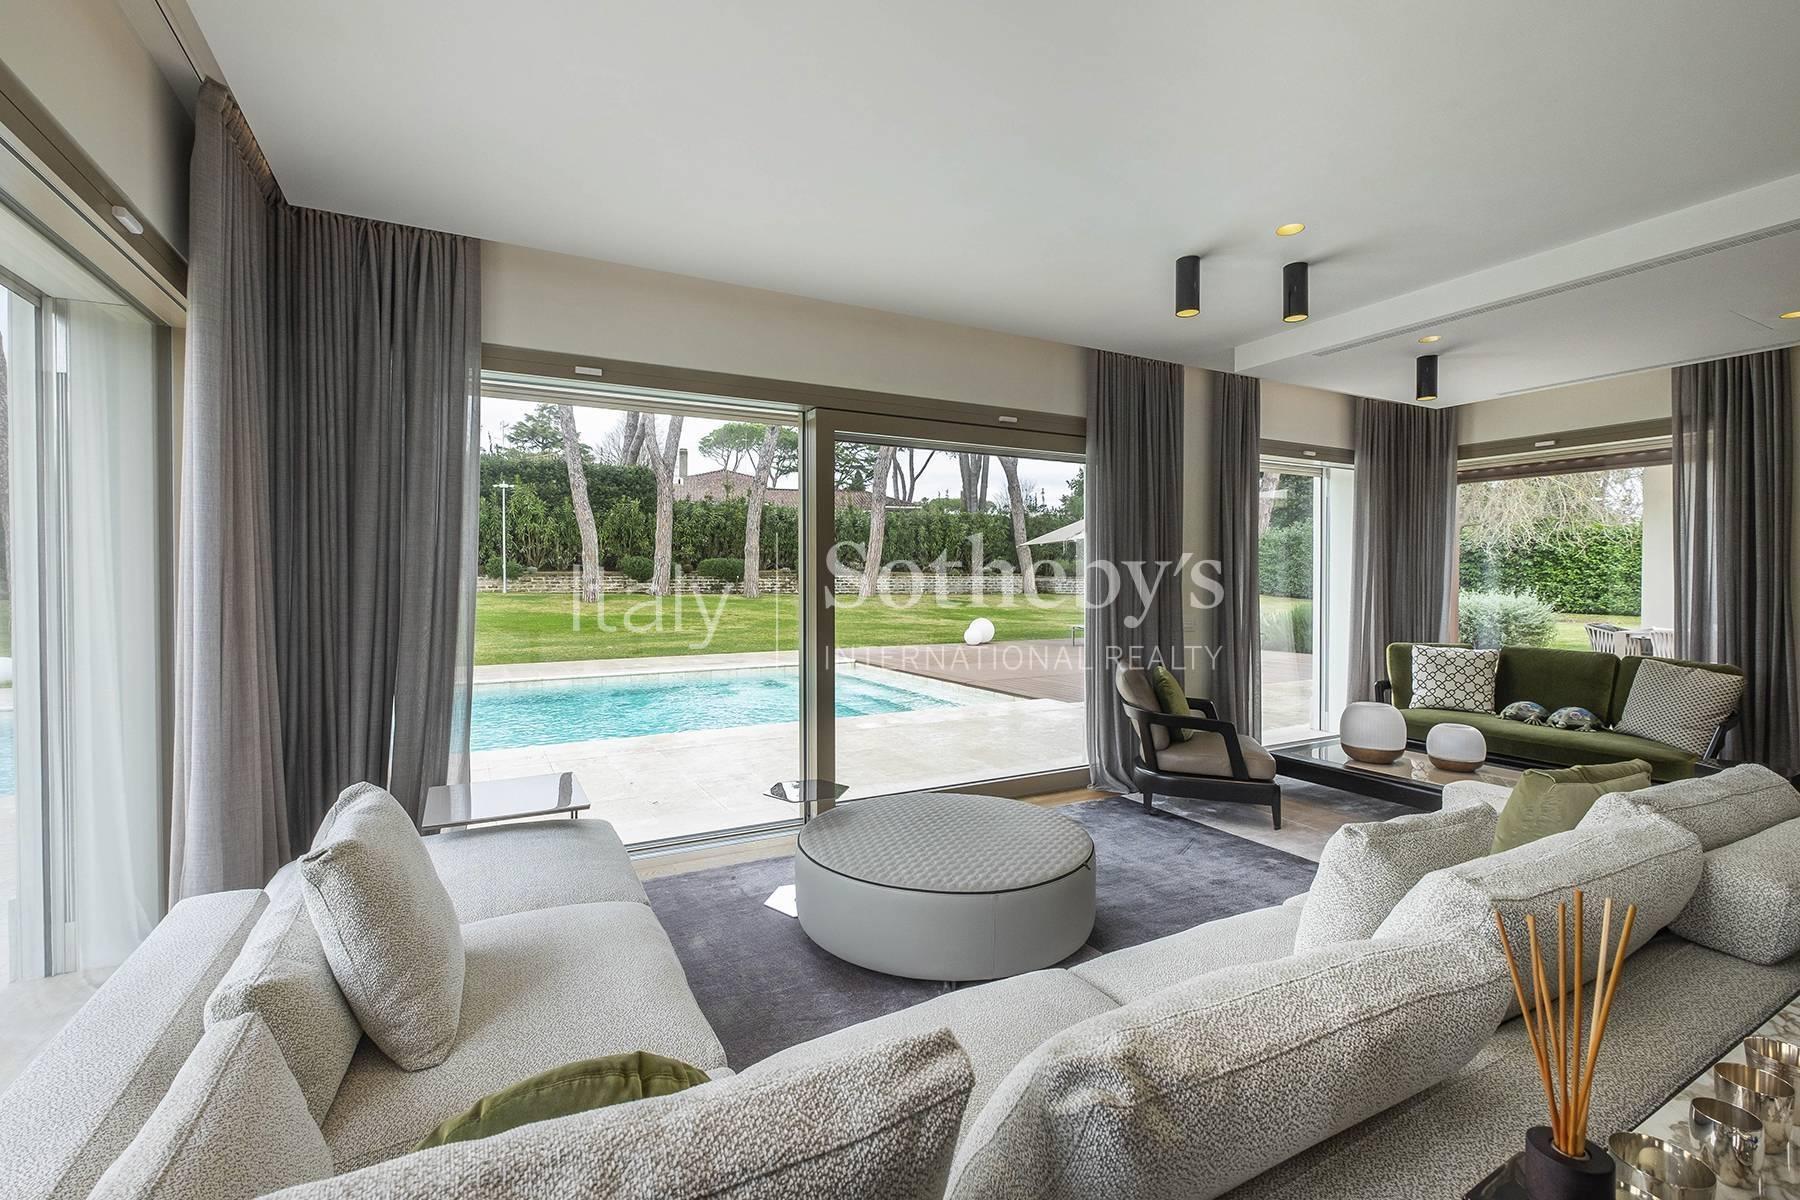 Wunderschöne moderne Villa mit Pool im Olgiata Stadtviertel - 4